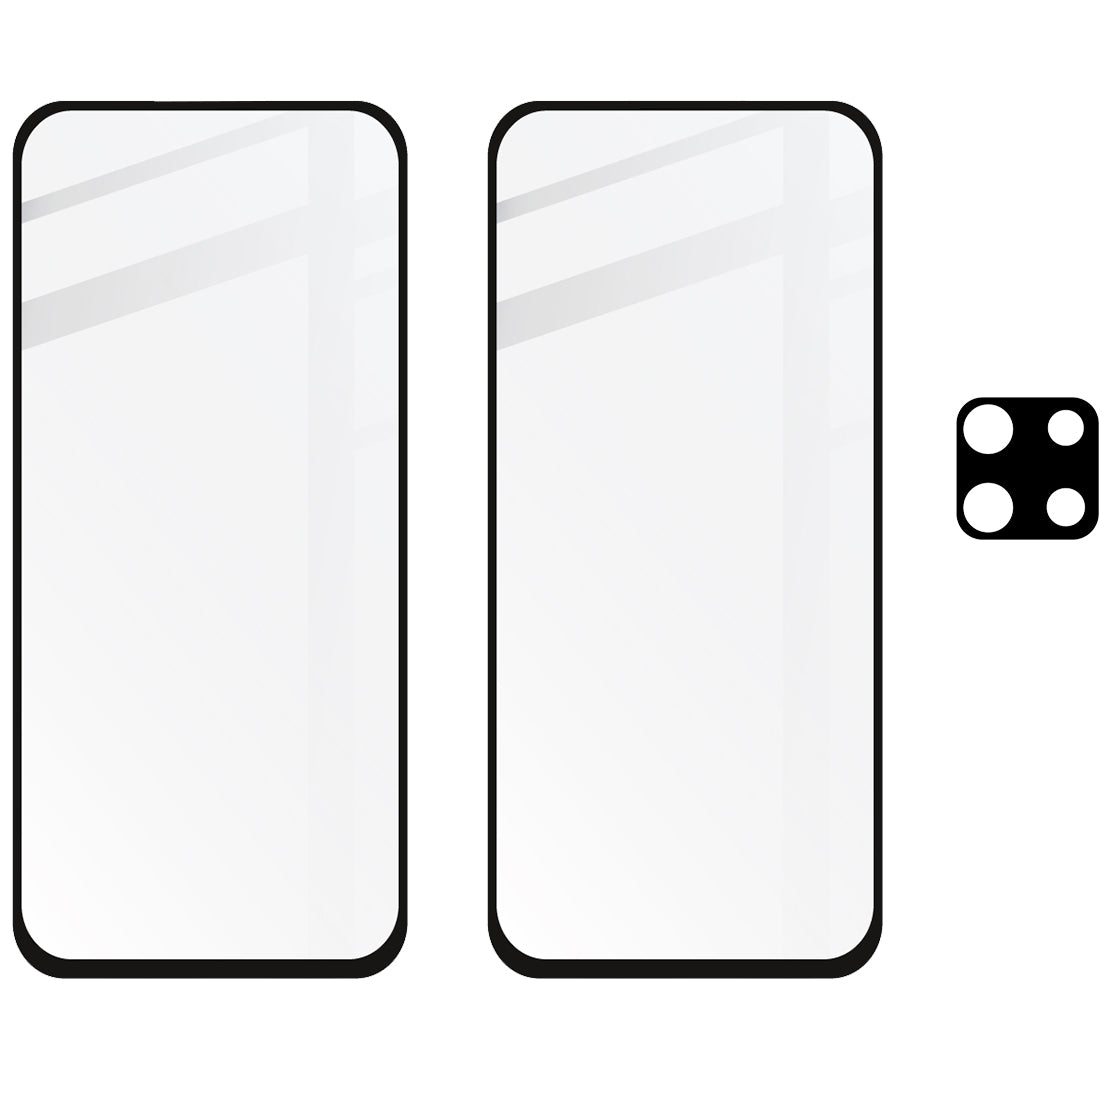 Gehärtetes Glas Bizon Glass Edge CF - 2 Stück + Kameraschutz, Xiaomi Redmi Note 9S / 9 Pro / 9 Pro Max, schwarzer Rahmen